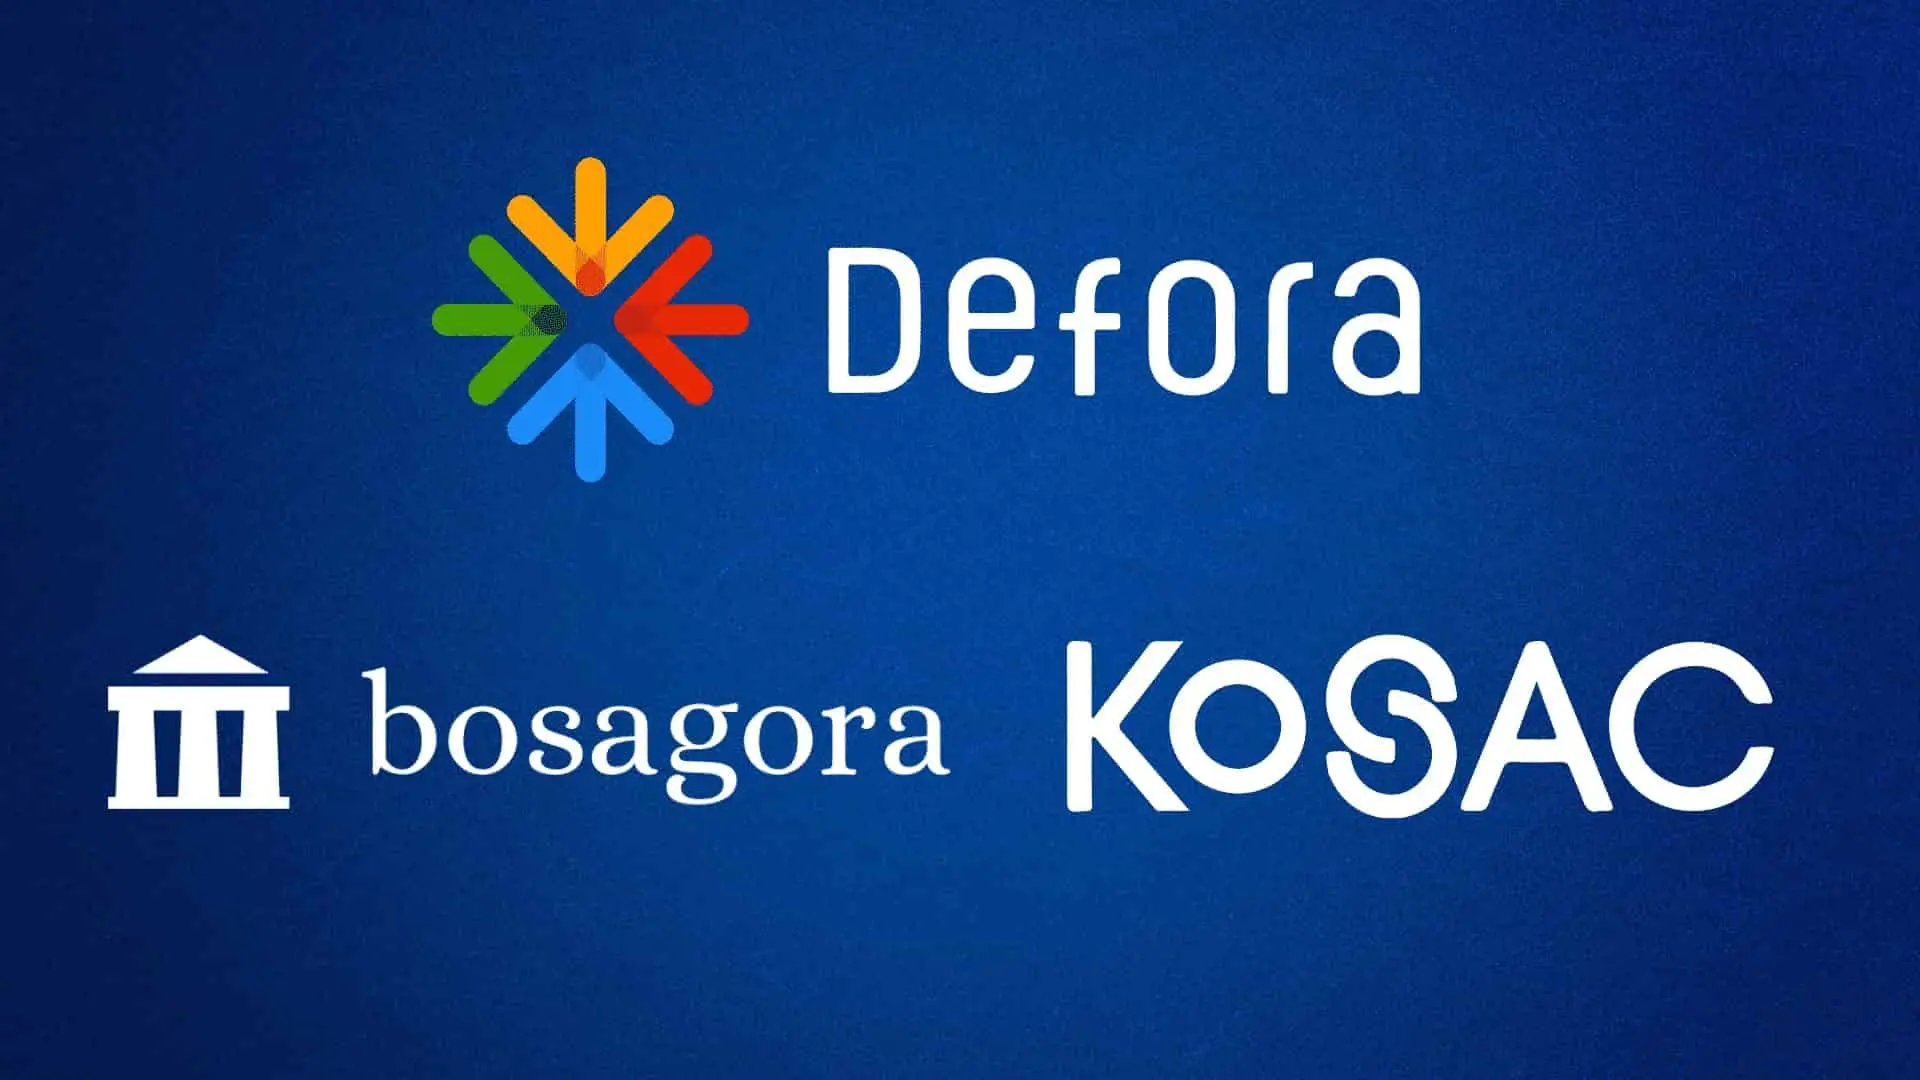 Bosagora With Kosac Displayed Defora to Increase